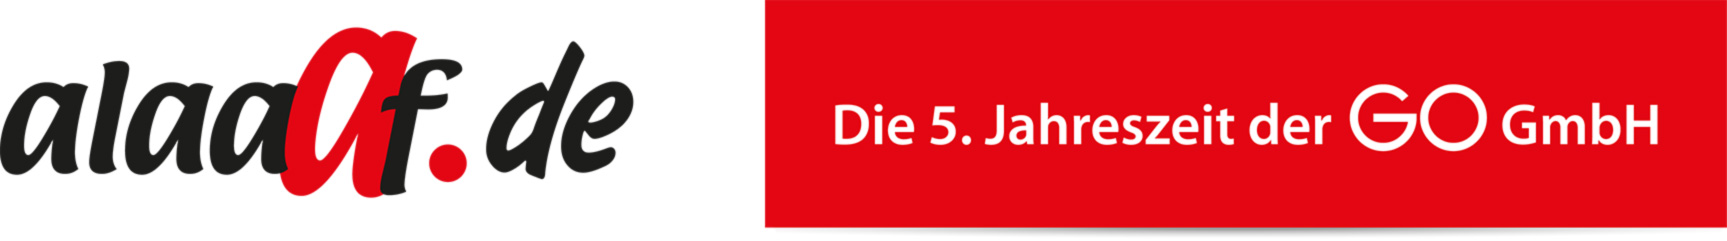 Kommando3 - alaaf.de - Die 5. Jahreszeit der GO GmbH